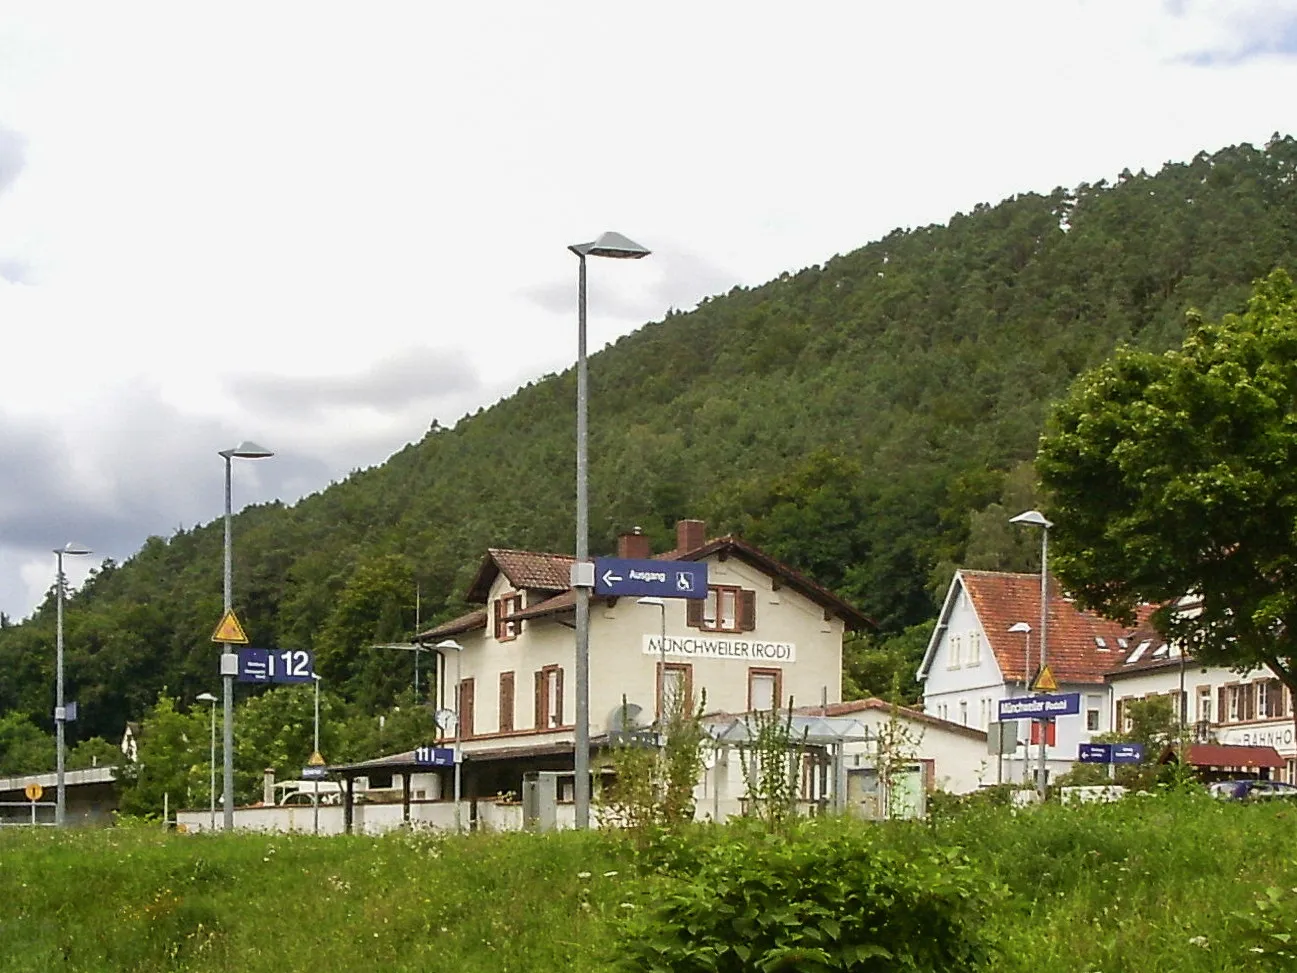 Photo showing: Münchweiler an der Rodalb train station.